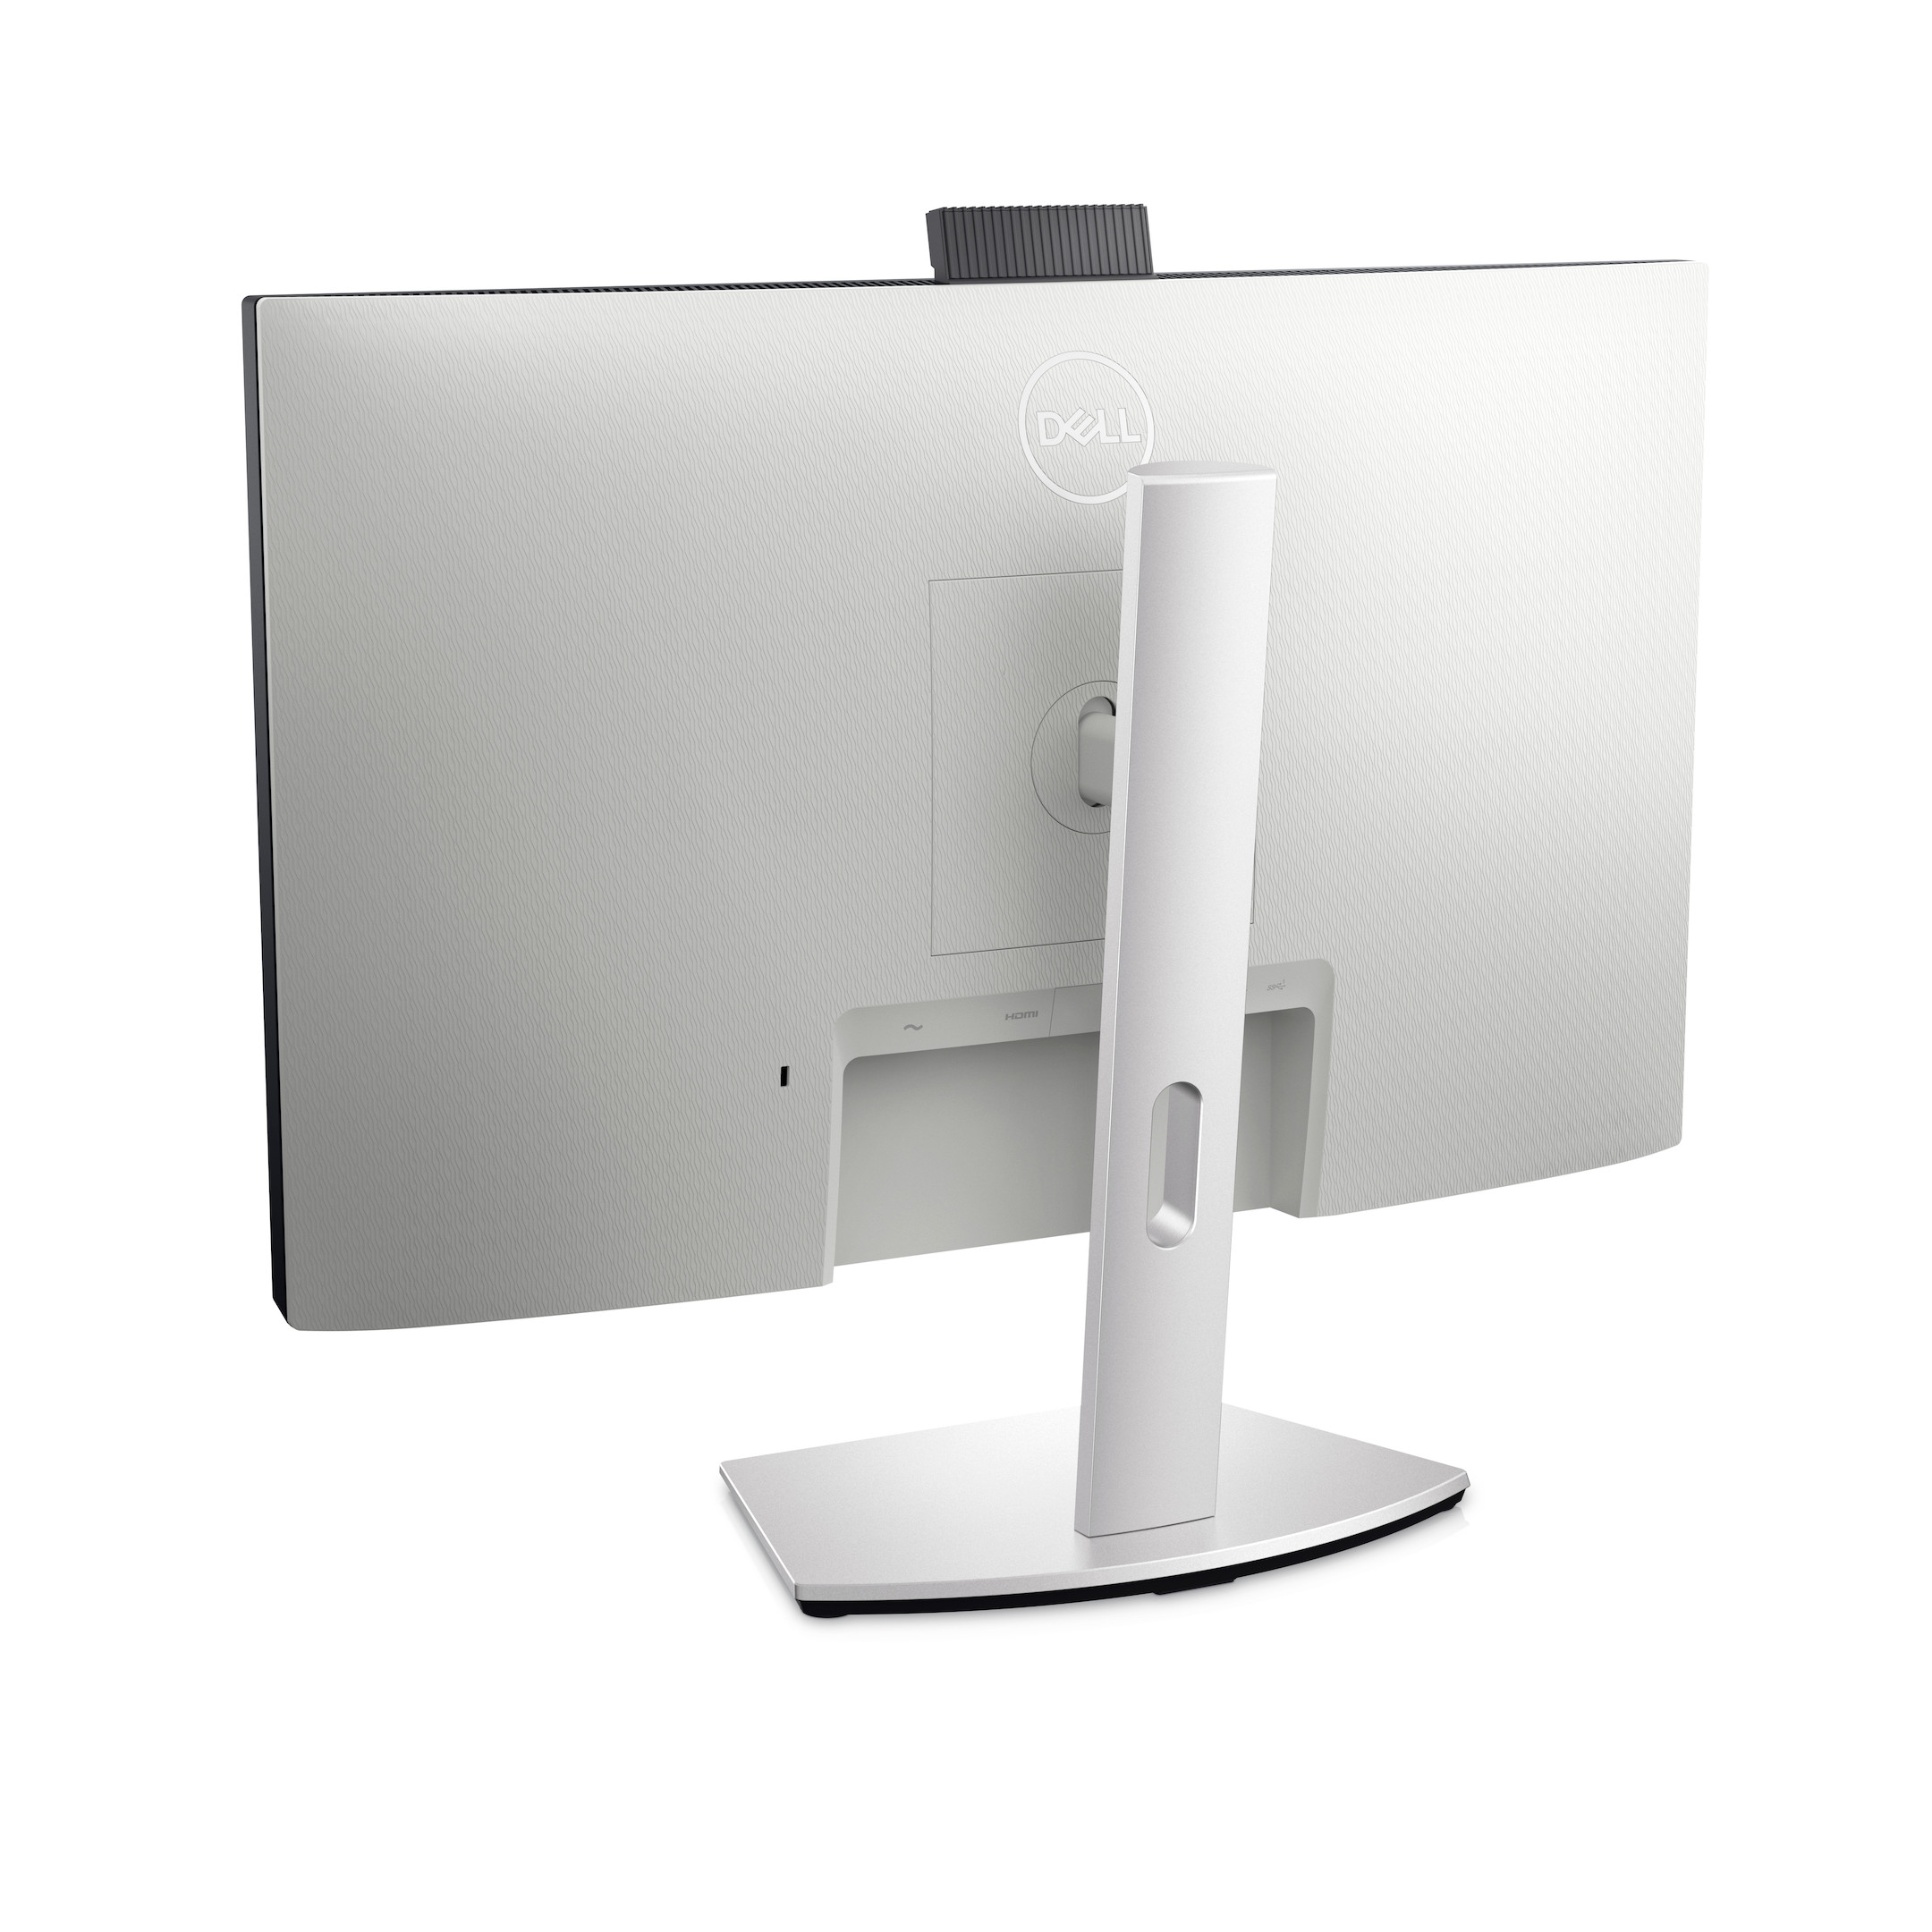 Dell-videoconferentiemonitor-S2722DZ-Demo